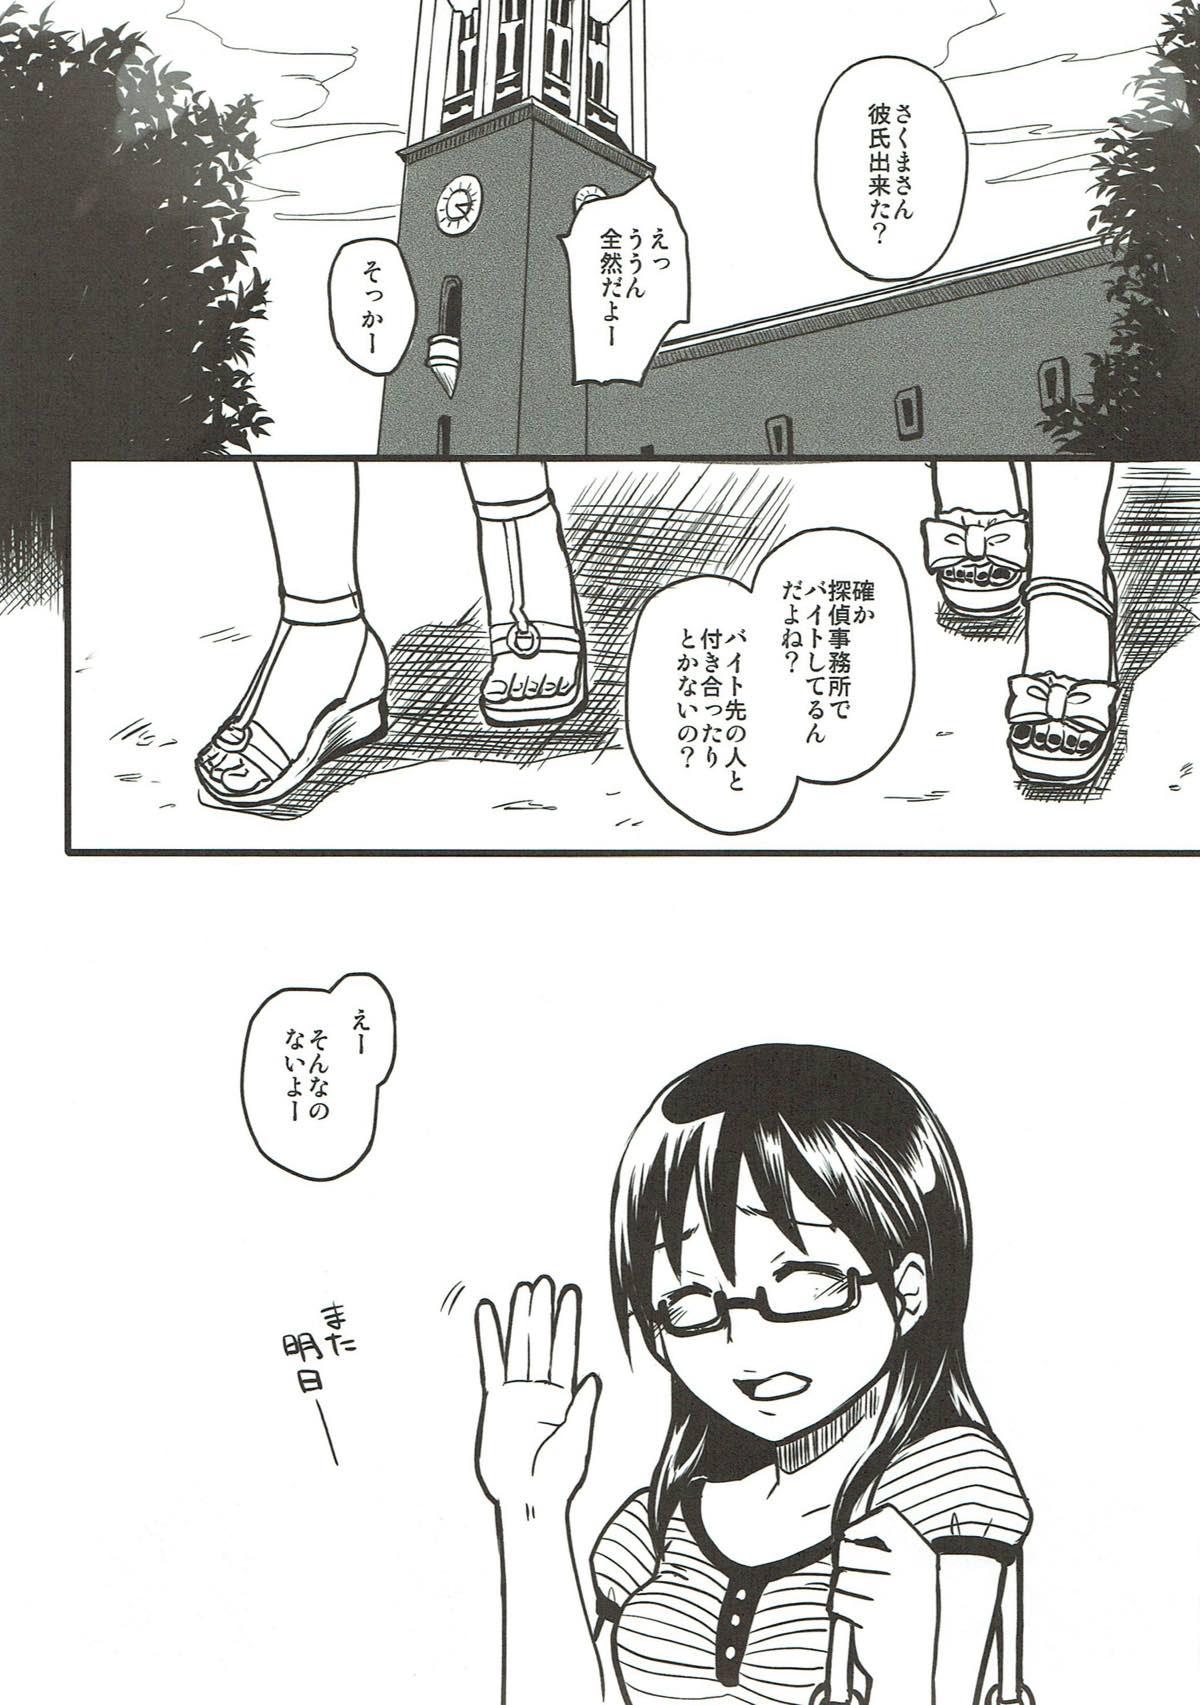 Analfuck Sore wa Sore de Heiwa na Nichijou. - Yondemasuyo azazel-san Girlfriend - Page 2